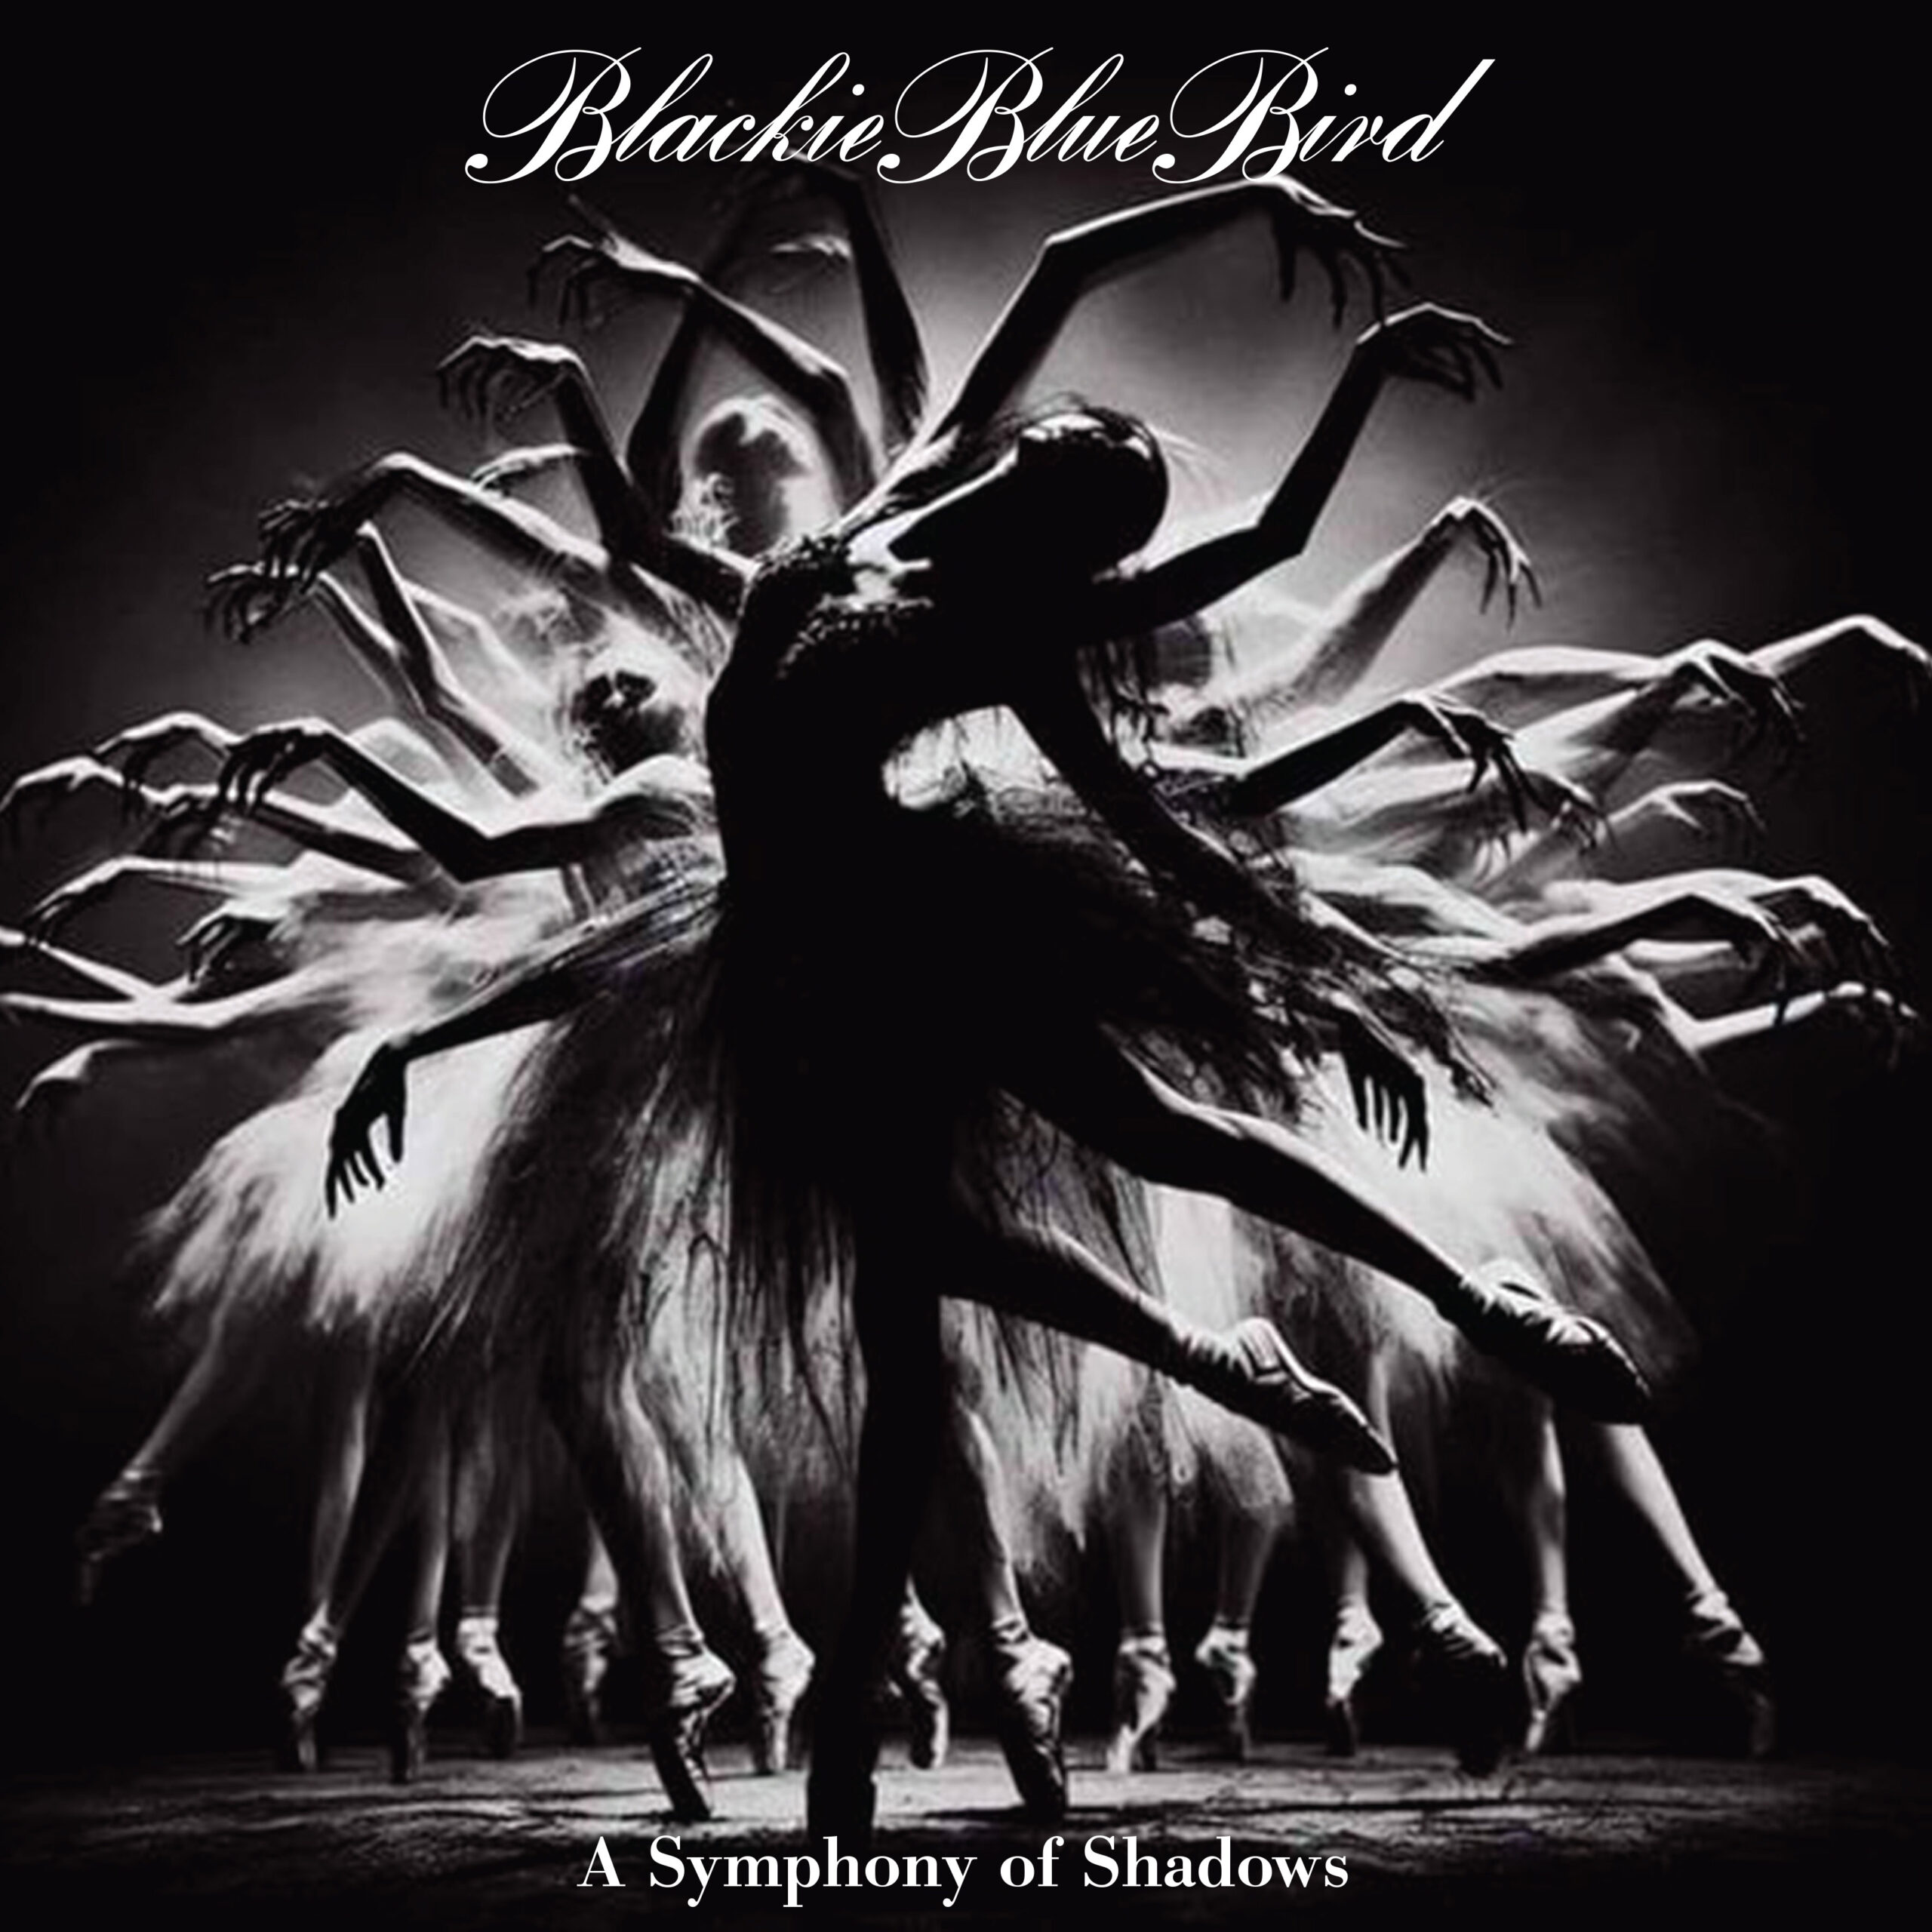 Descubre el Encanto de “A Symphony of Shadows”: El nuevo EP de BlackieBlueBird